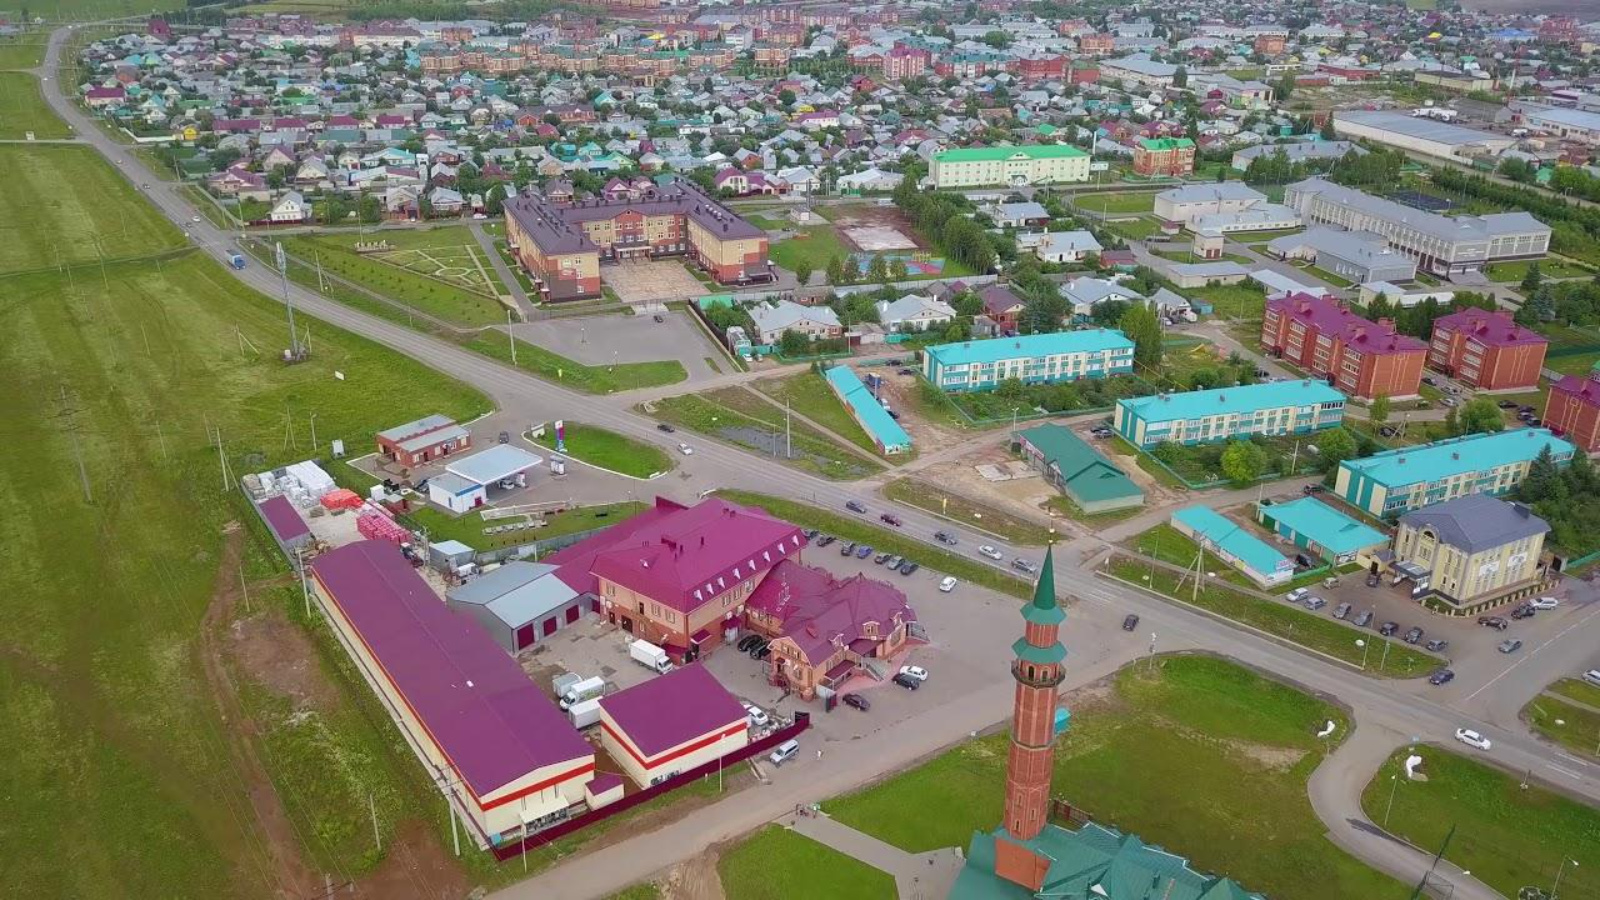 Арск город в татарстане фото